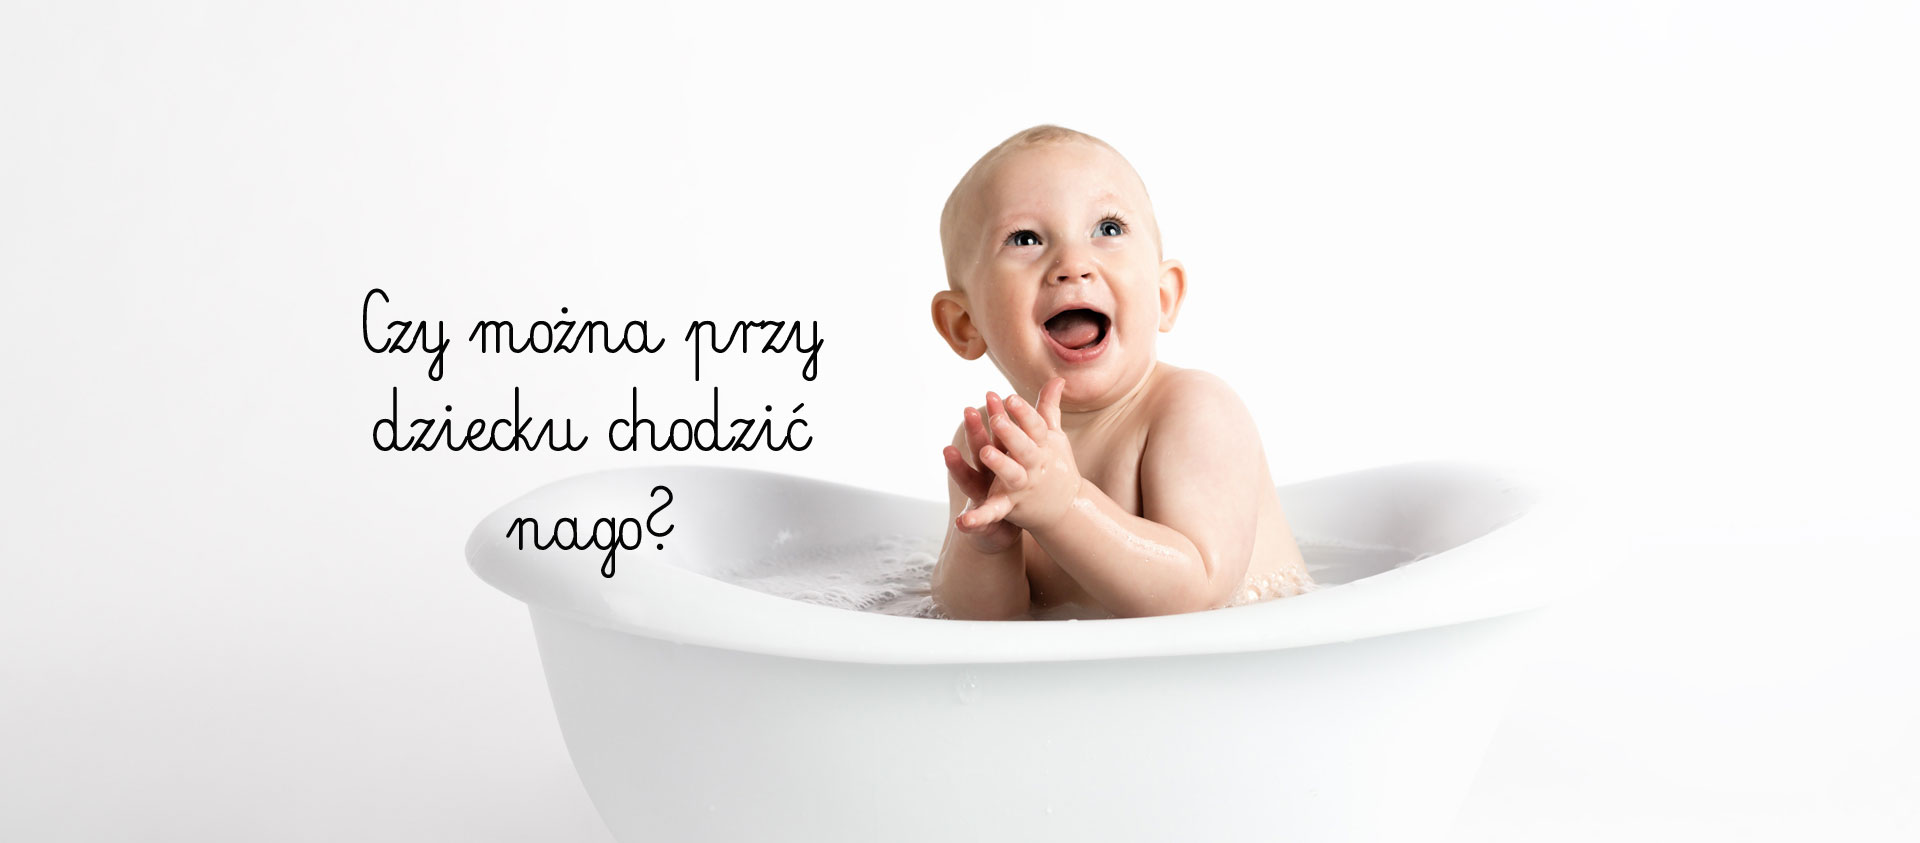 baby-bath-bathtub-914253